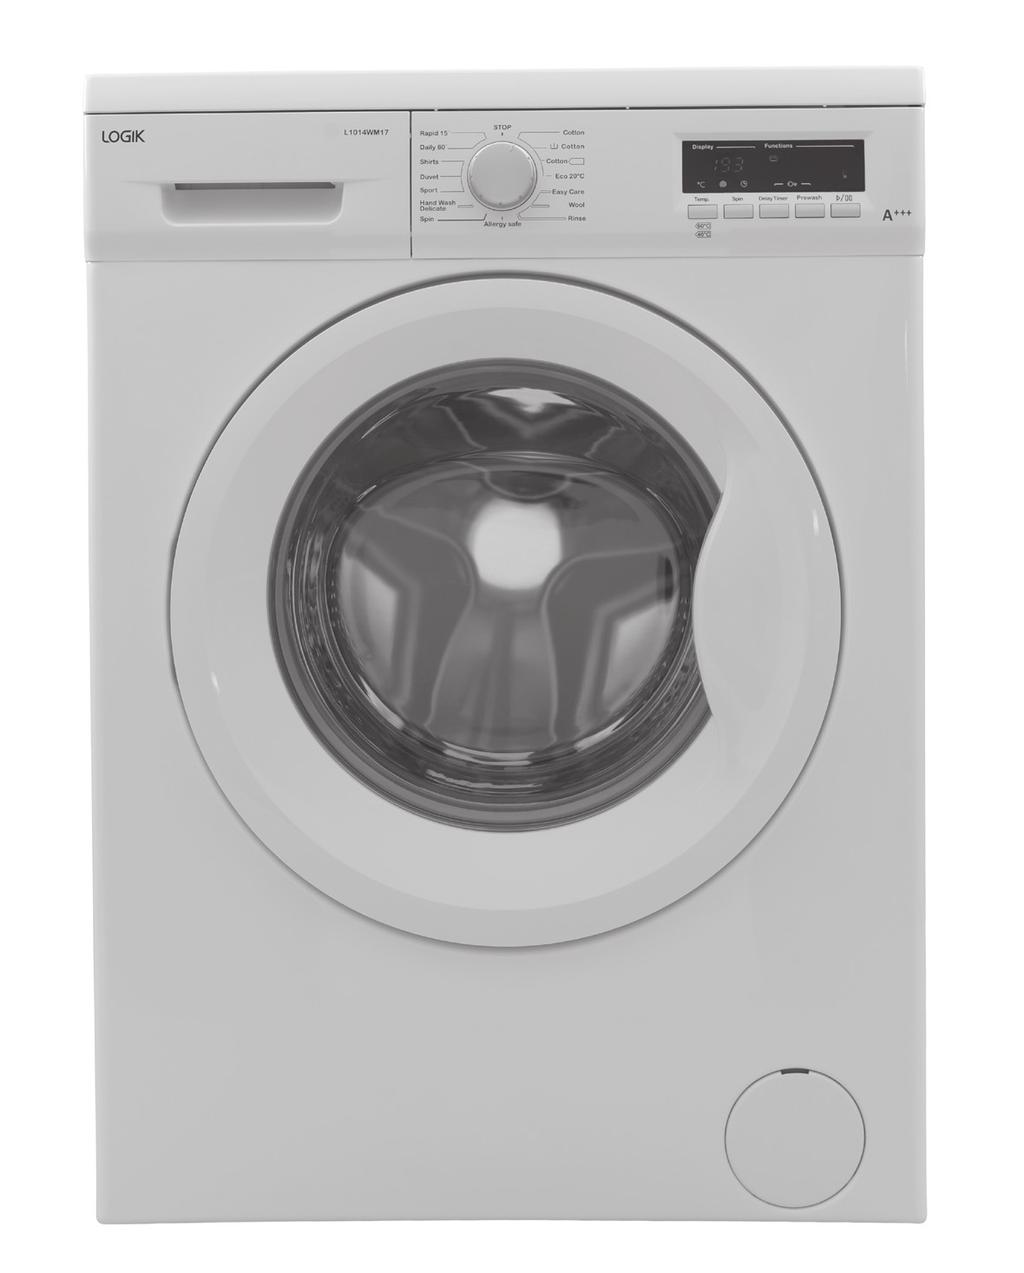 Instruction Manual 10kg Washing Machine